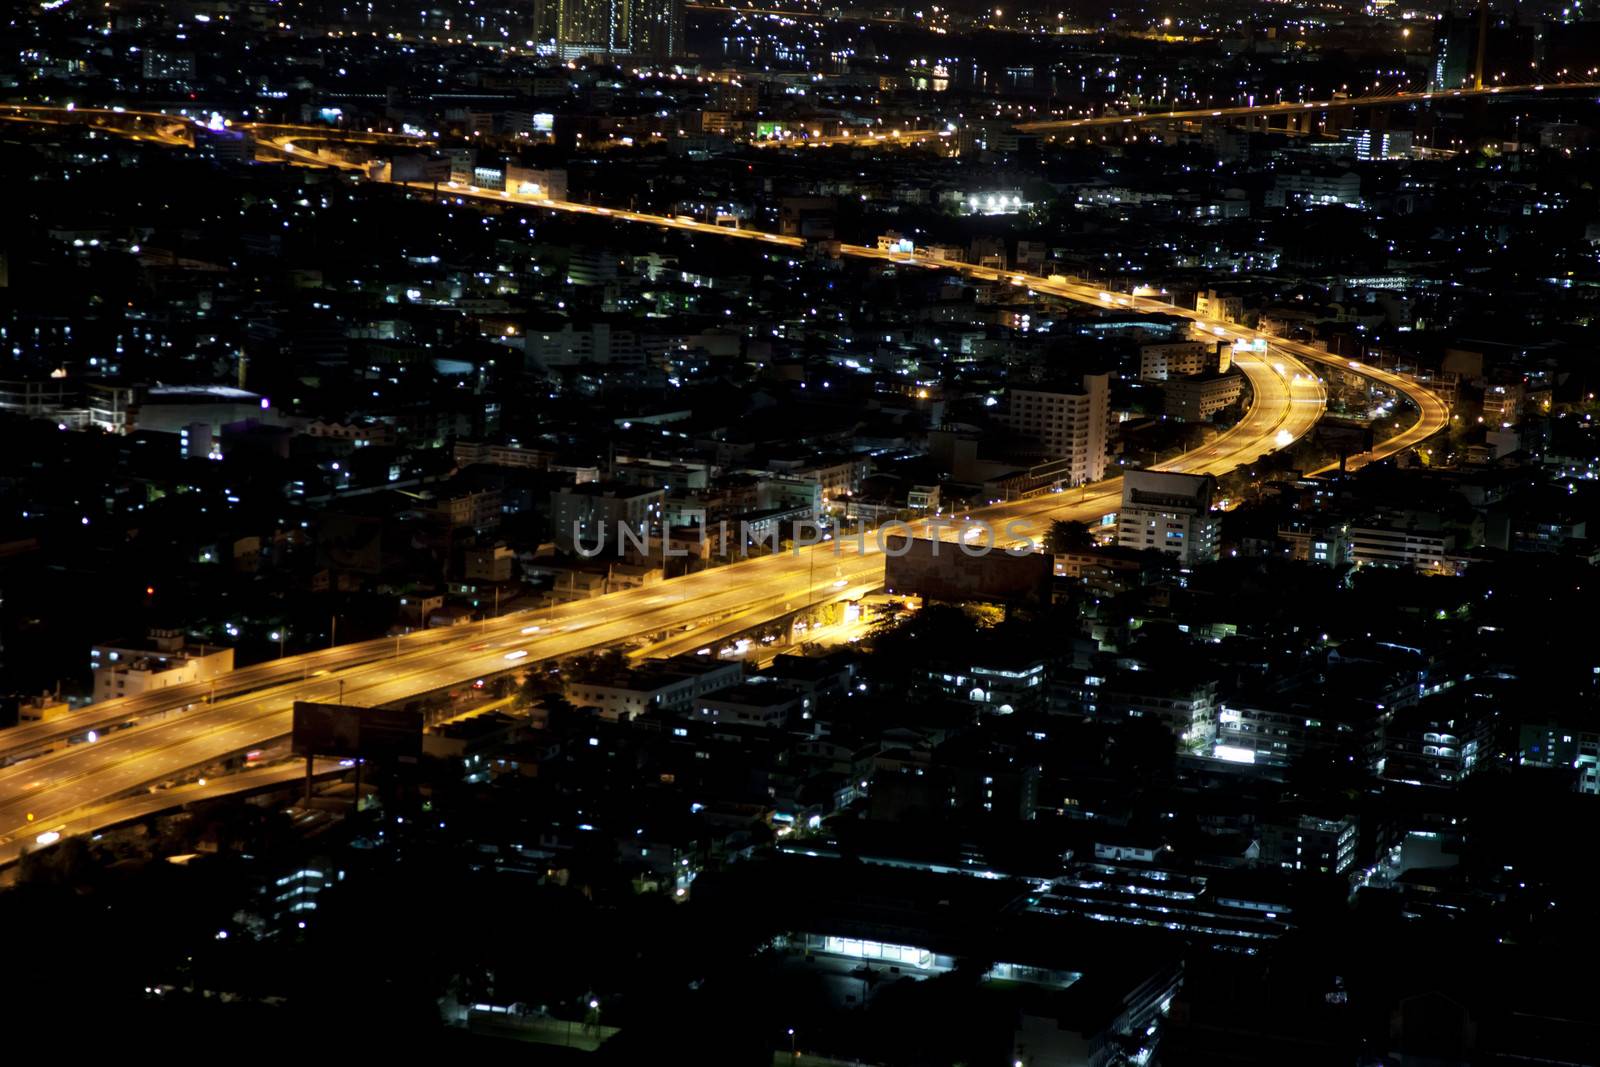 Bangkok city at night by ldambies